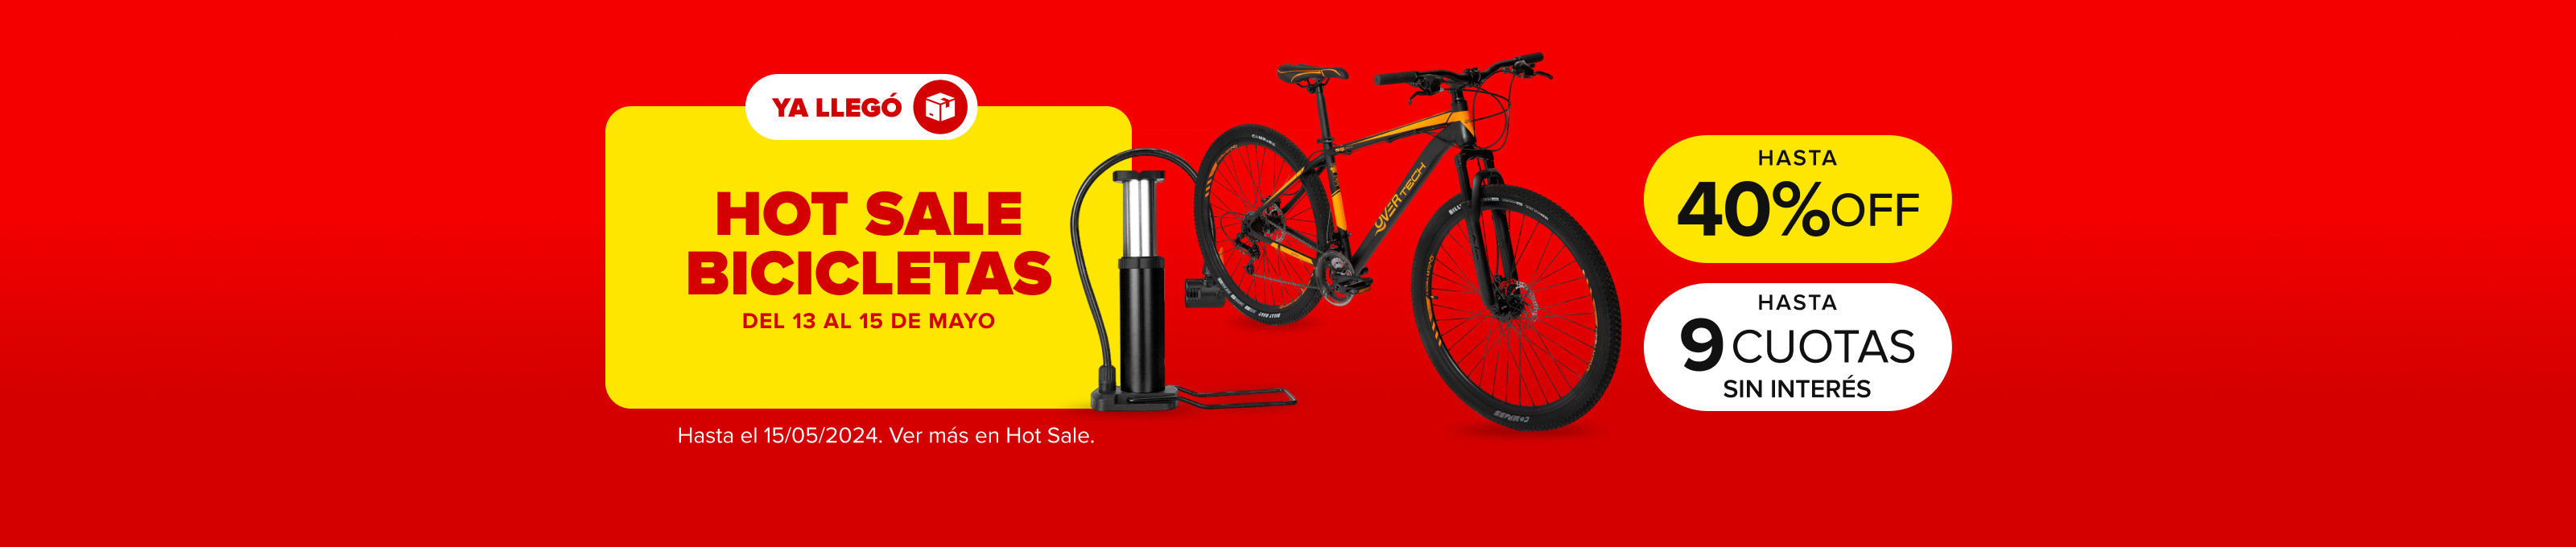 Hot Sale bicicletas, hasta 40% off y hasta 9 cuotas sin interés